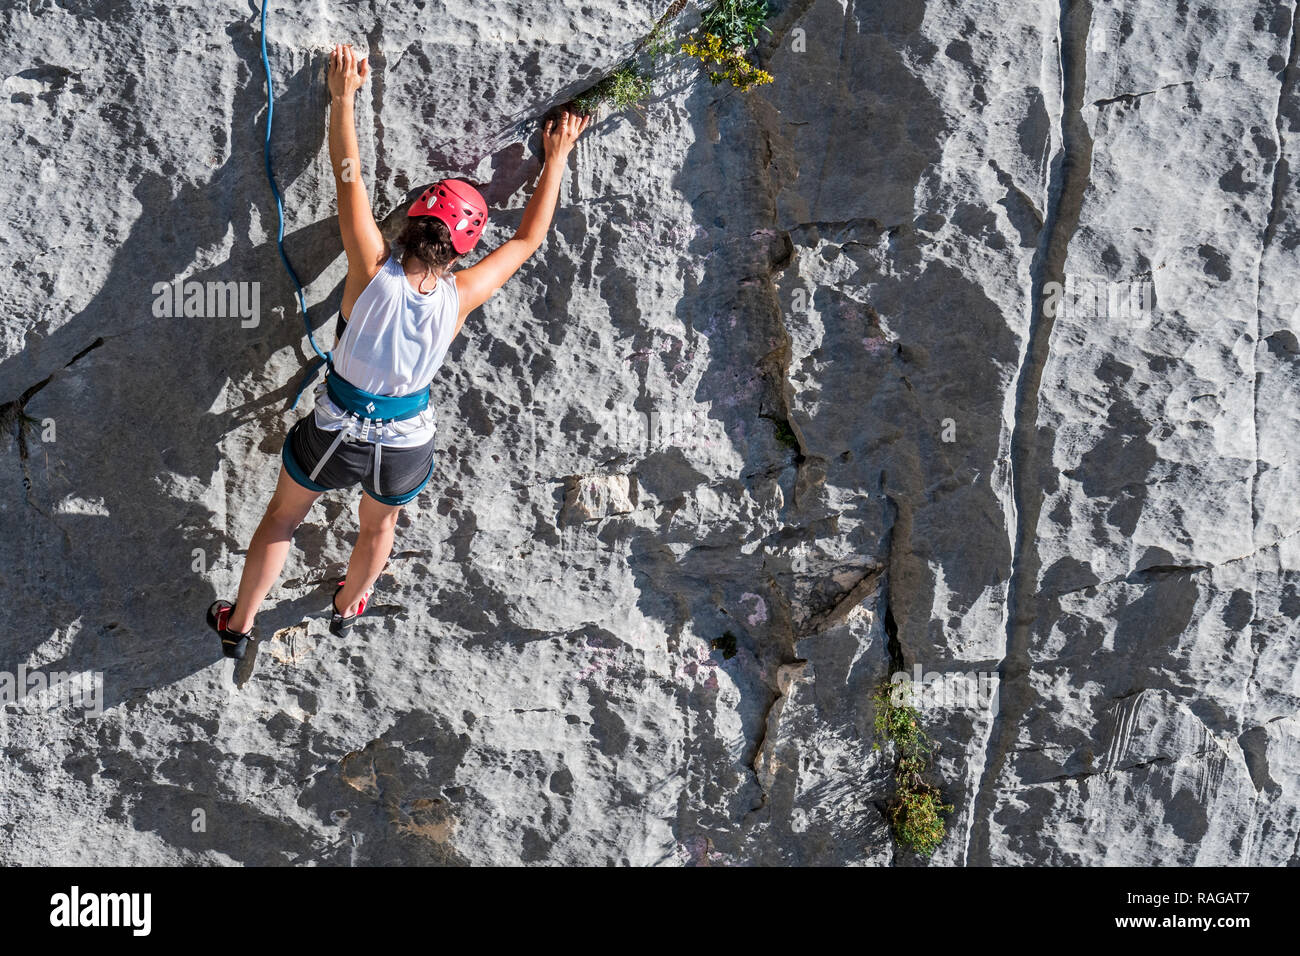 Kletterer klettern Fels in den Gorges du Verdon Verdon Schlucht / Canyon, Alpes-de-Haute-Provence, Provence - Alpes - Côte d'Azur, Frankreich Stockfoto